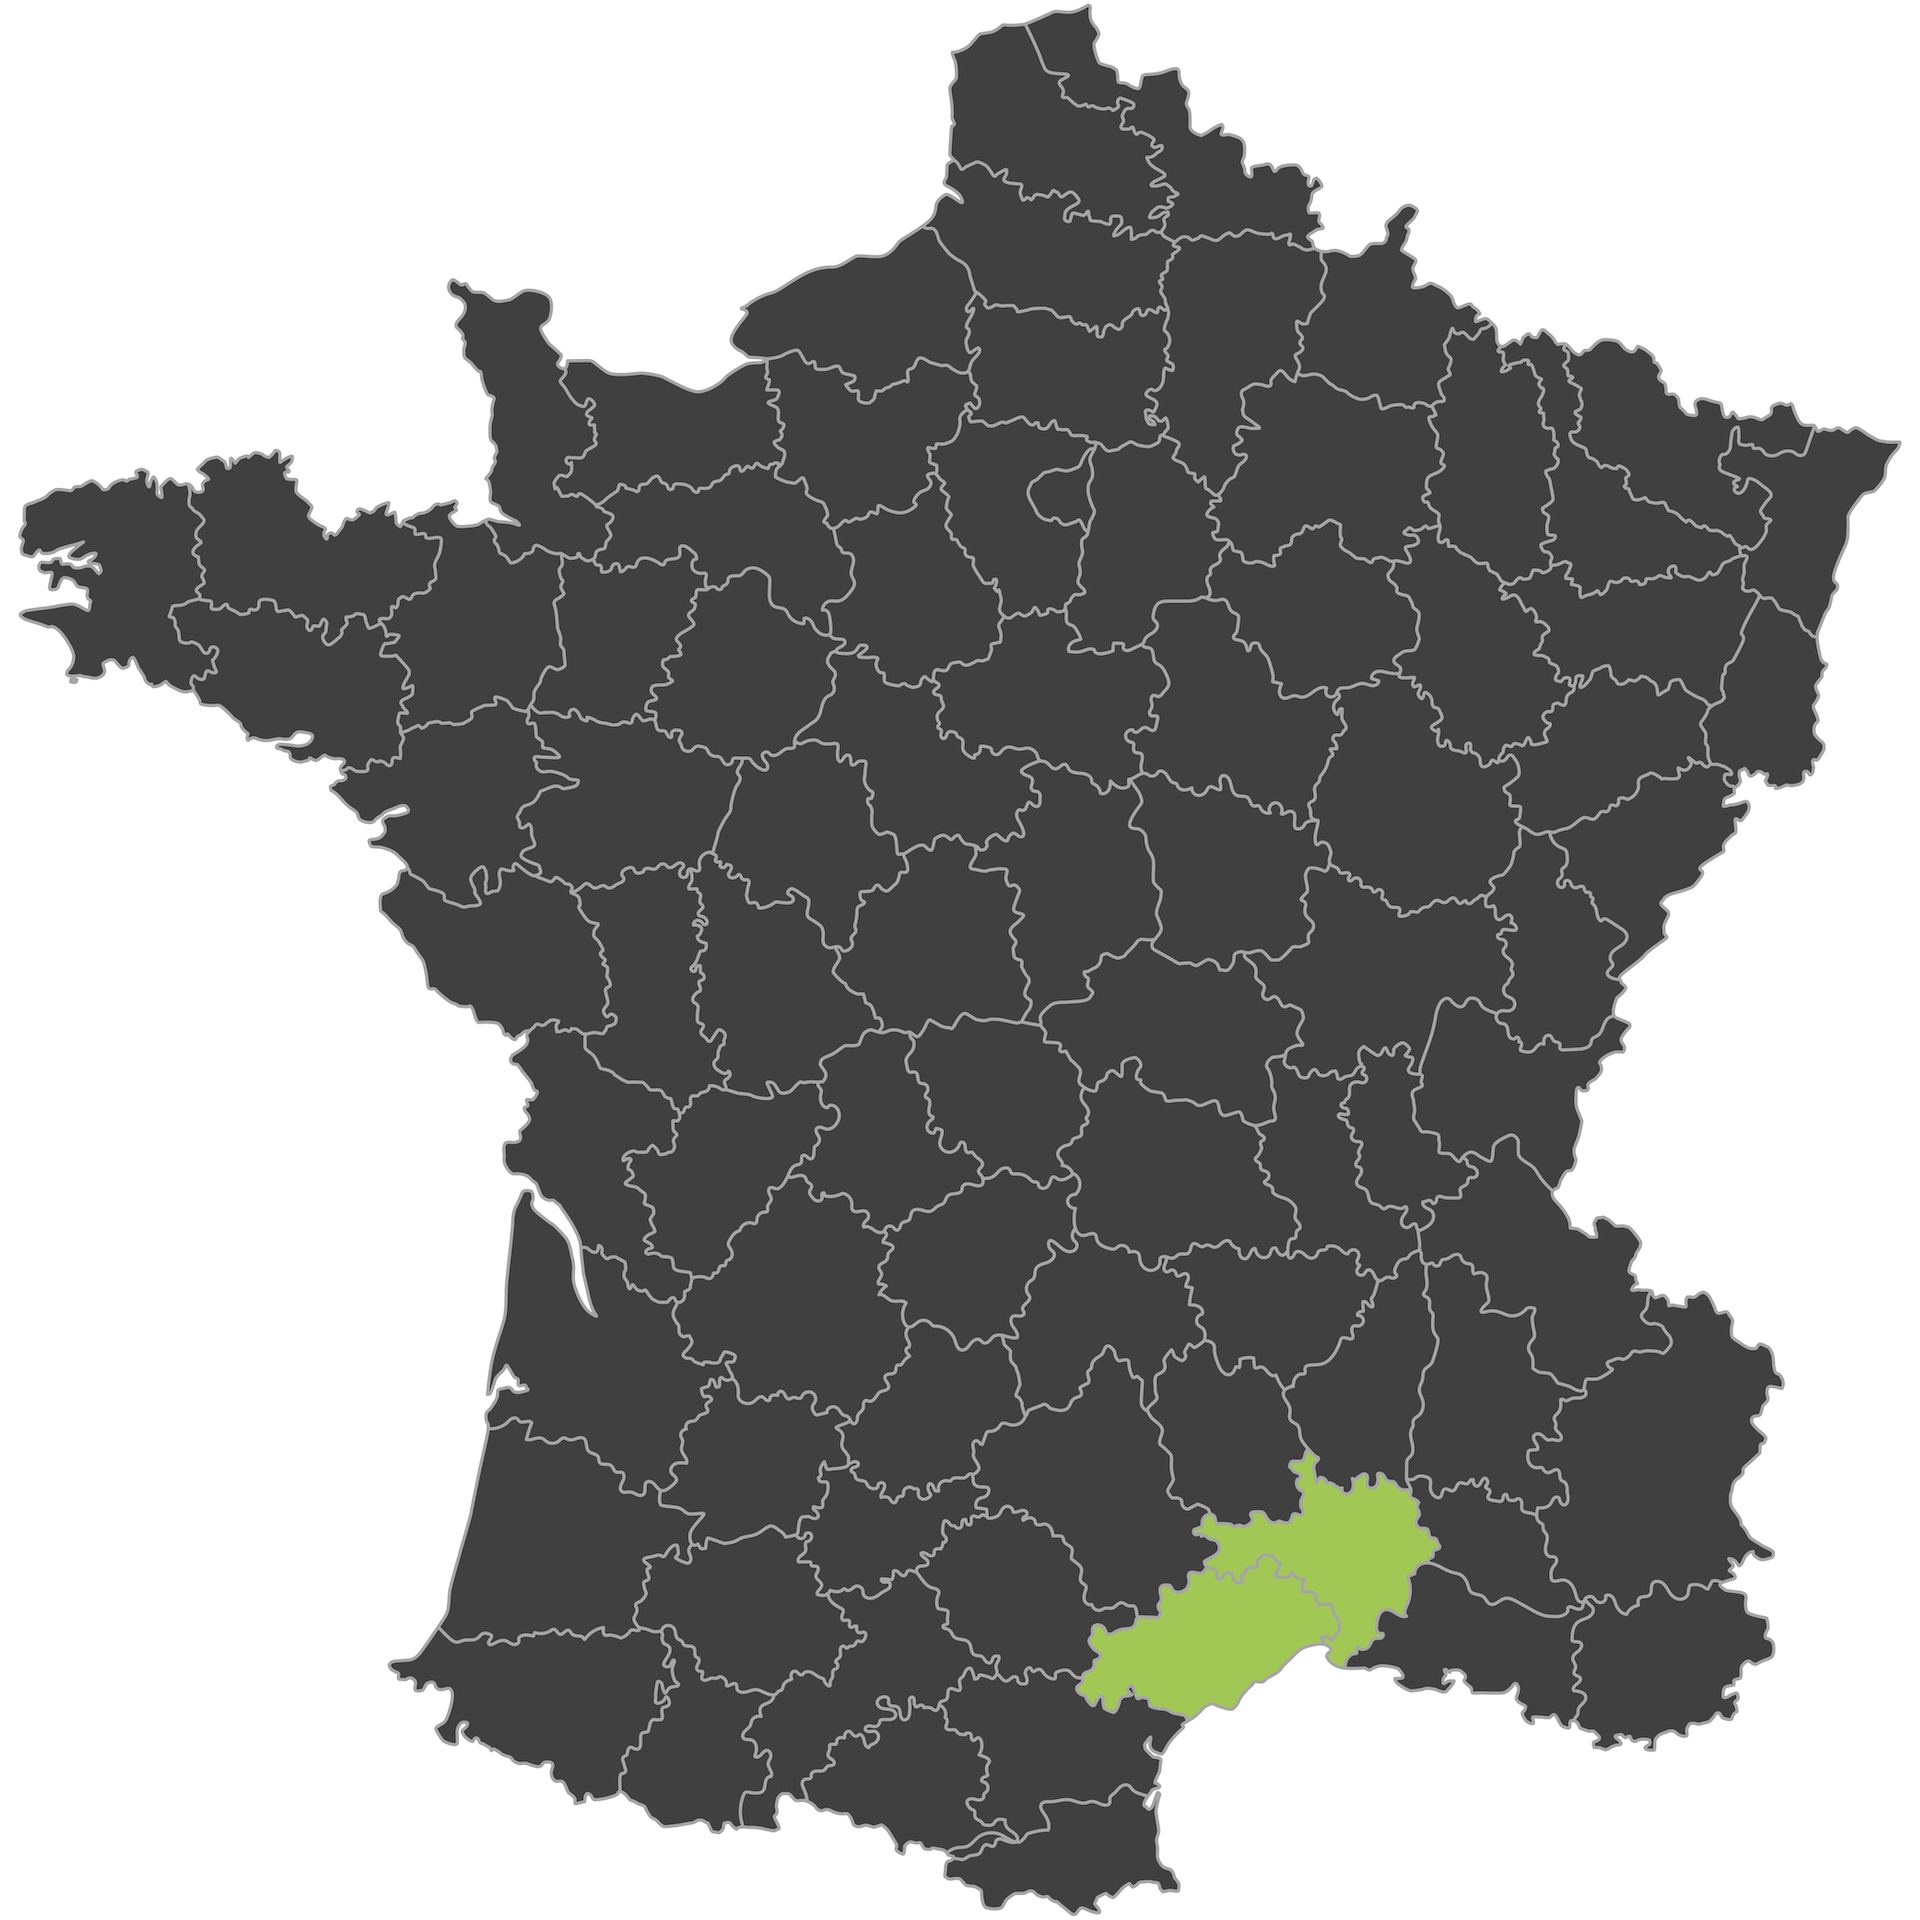 Carte de France grise où les départements de l'Hérault et du Gard sont verts pour réaliser des économies d'énergie dans ces départements.